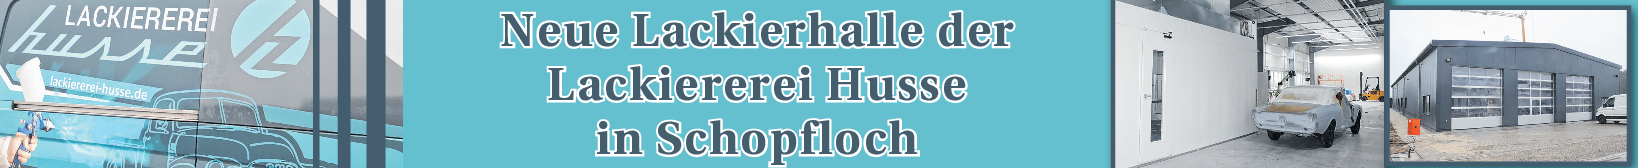 Husse in Schopfloch: Neues Karosserie- und Lackierzentrum